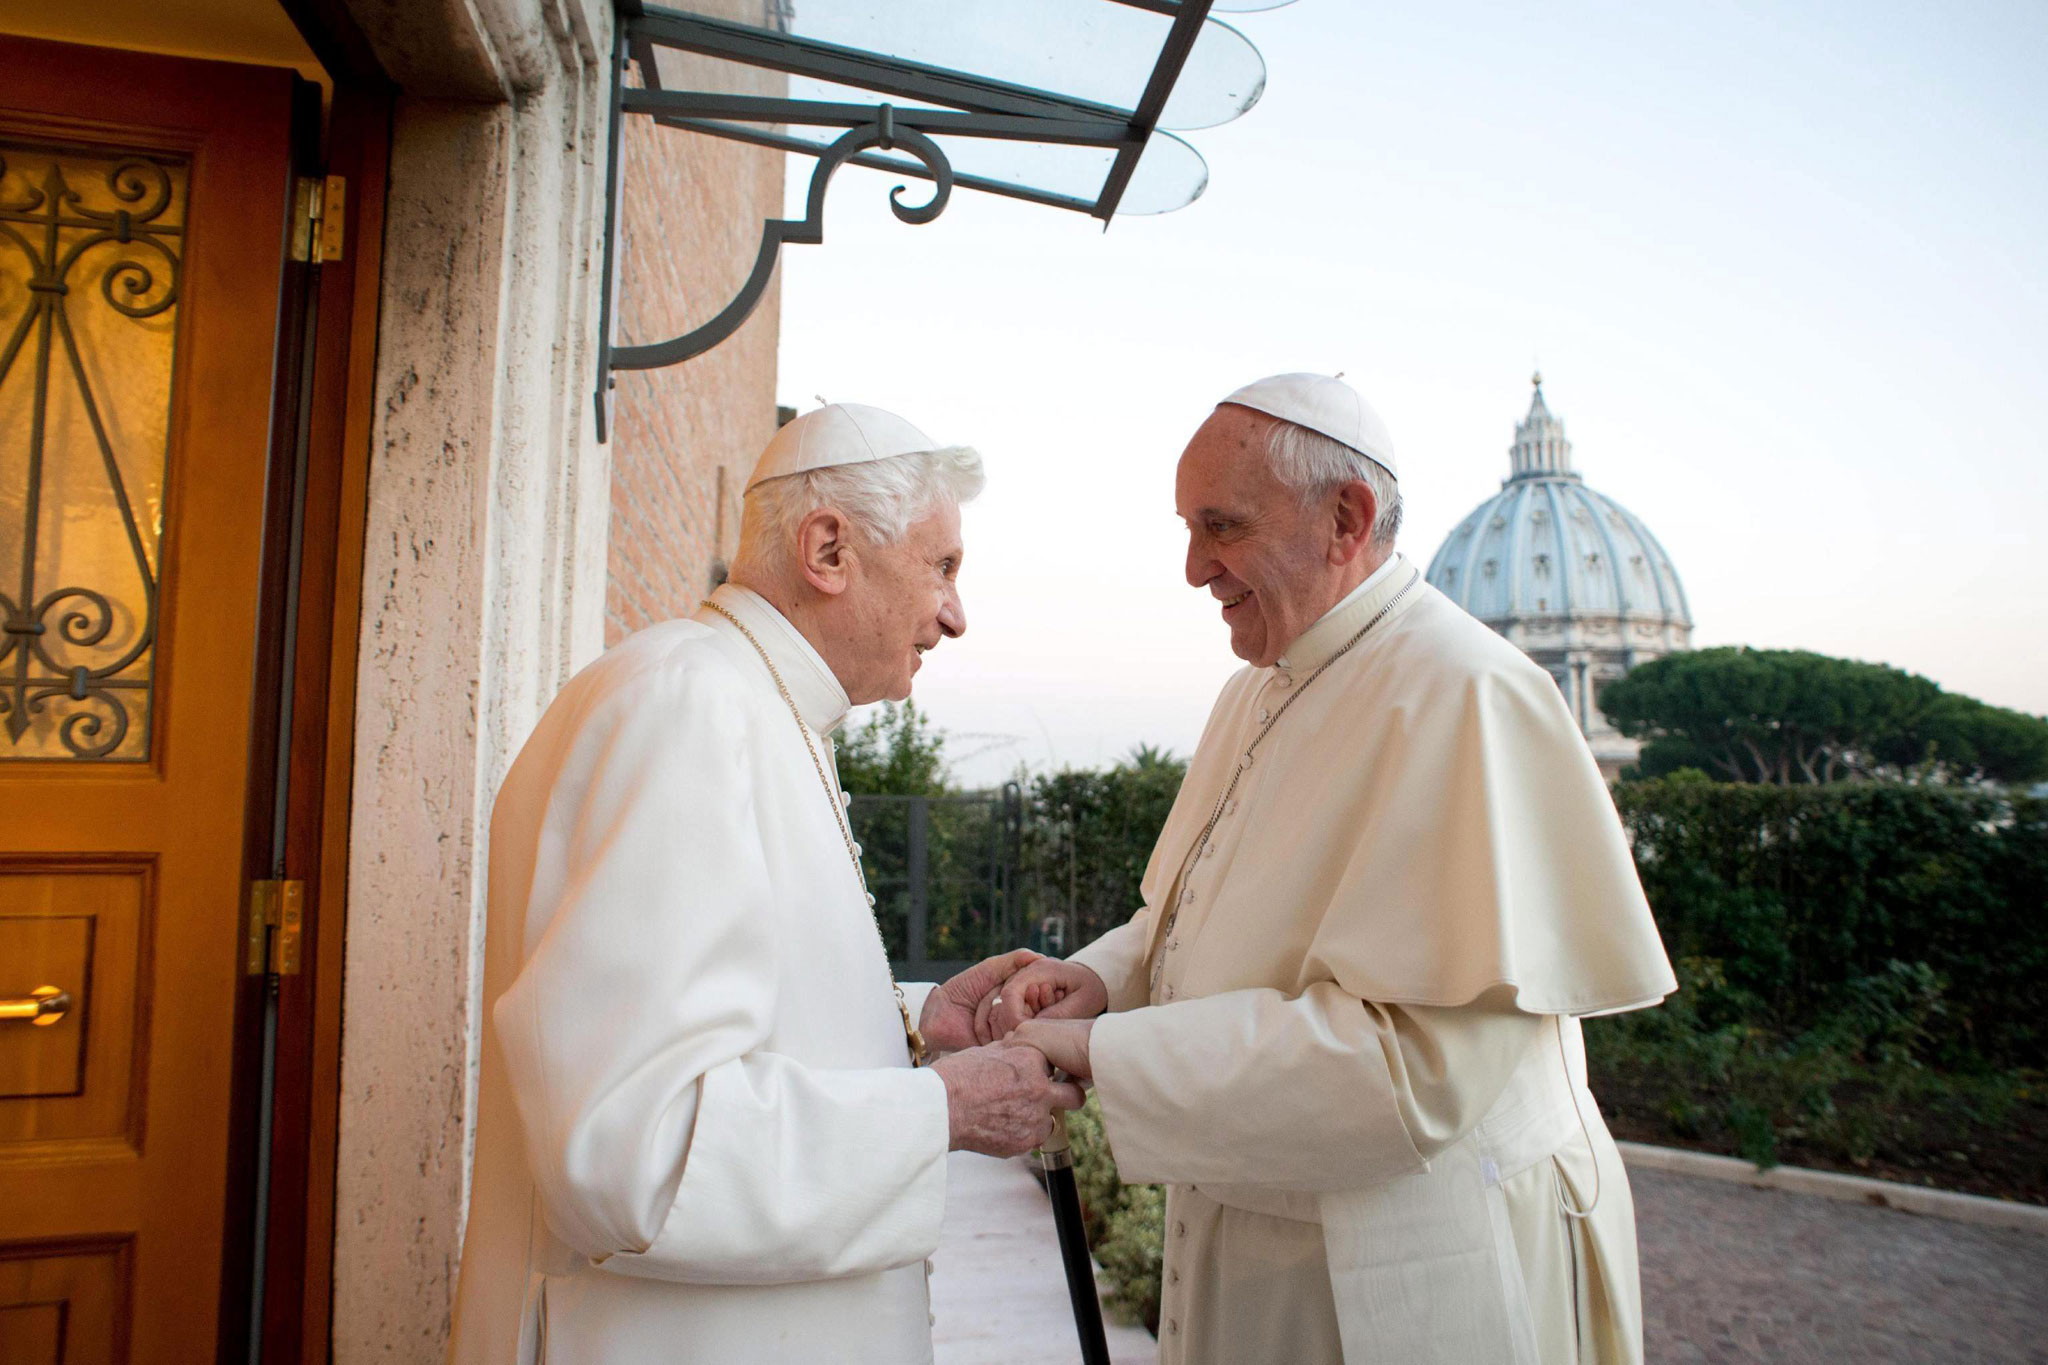  Benedicto XVI reconoce que gobernar la Iglesia Católica no fue su fuerte